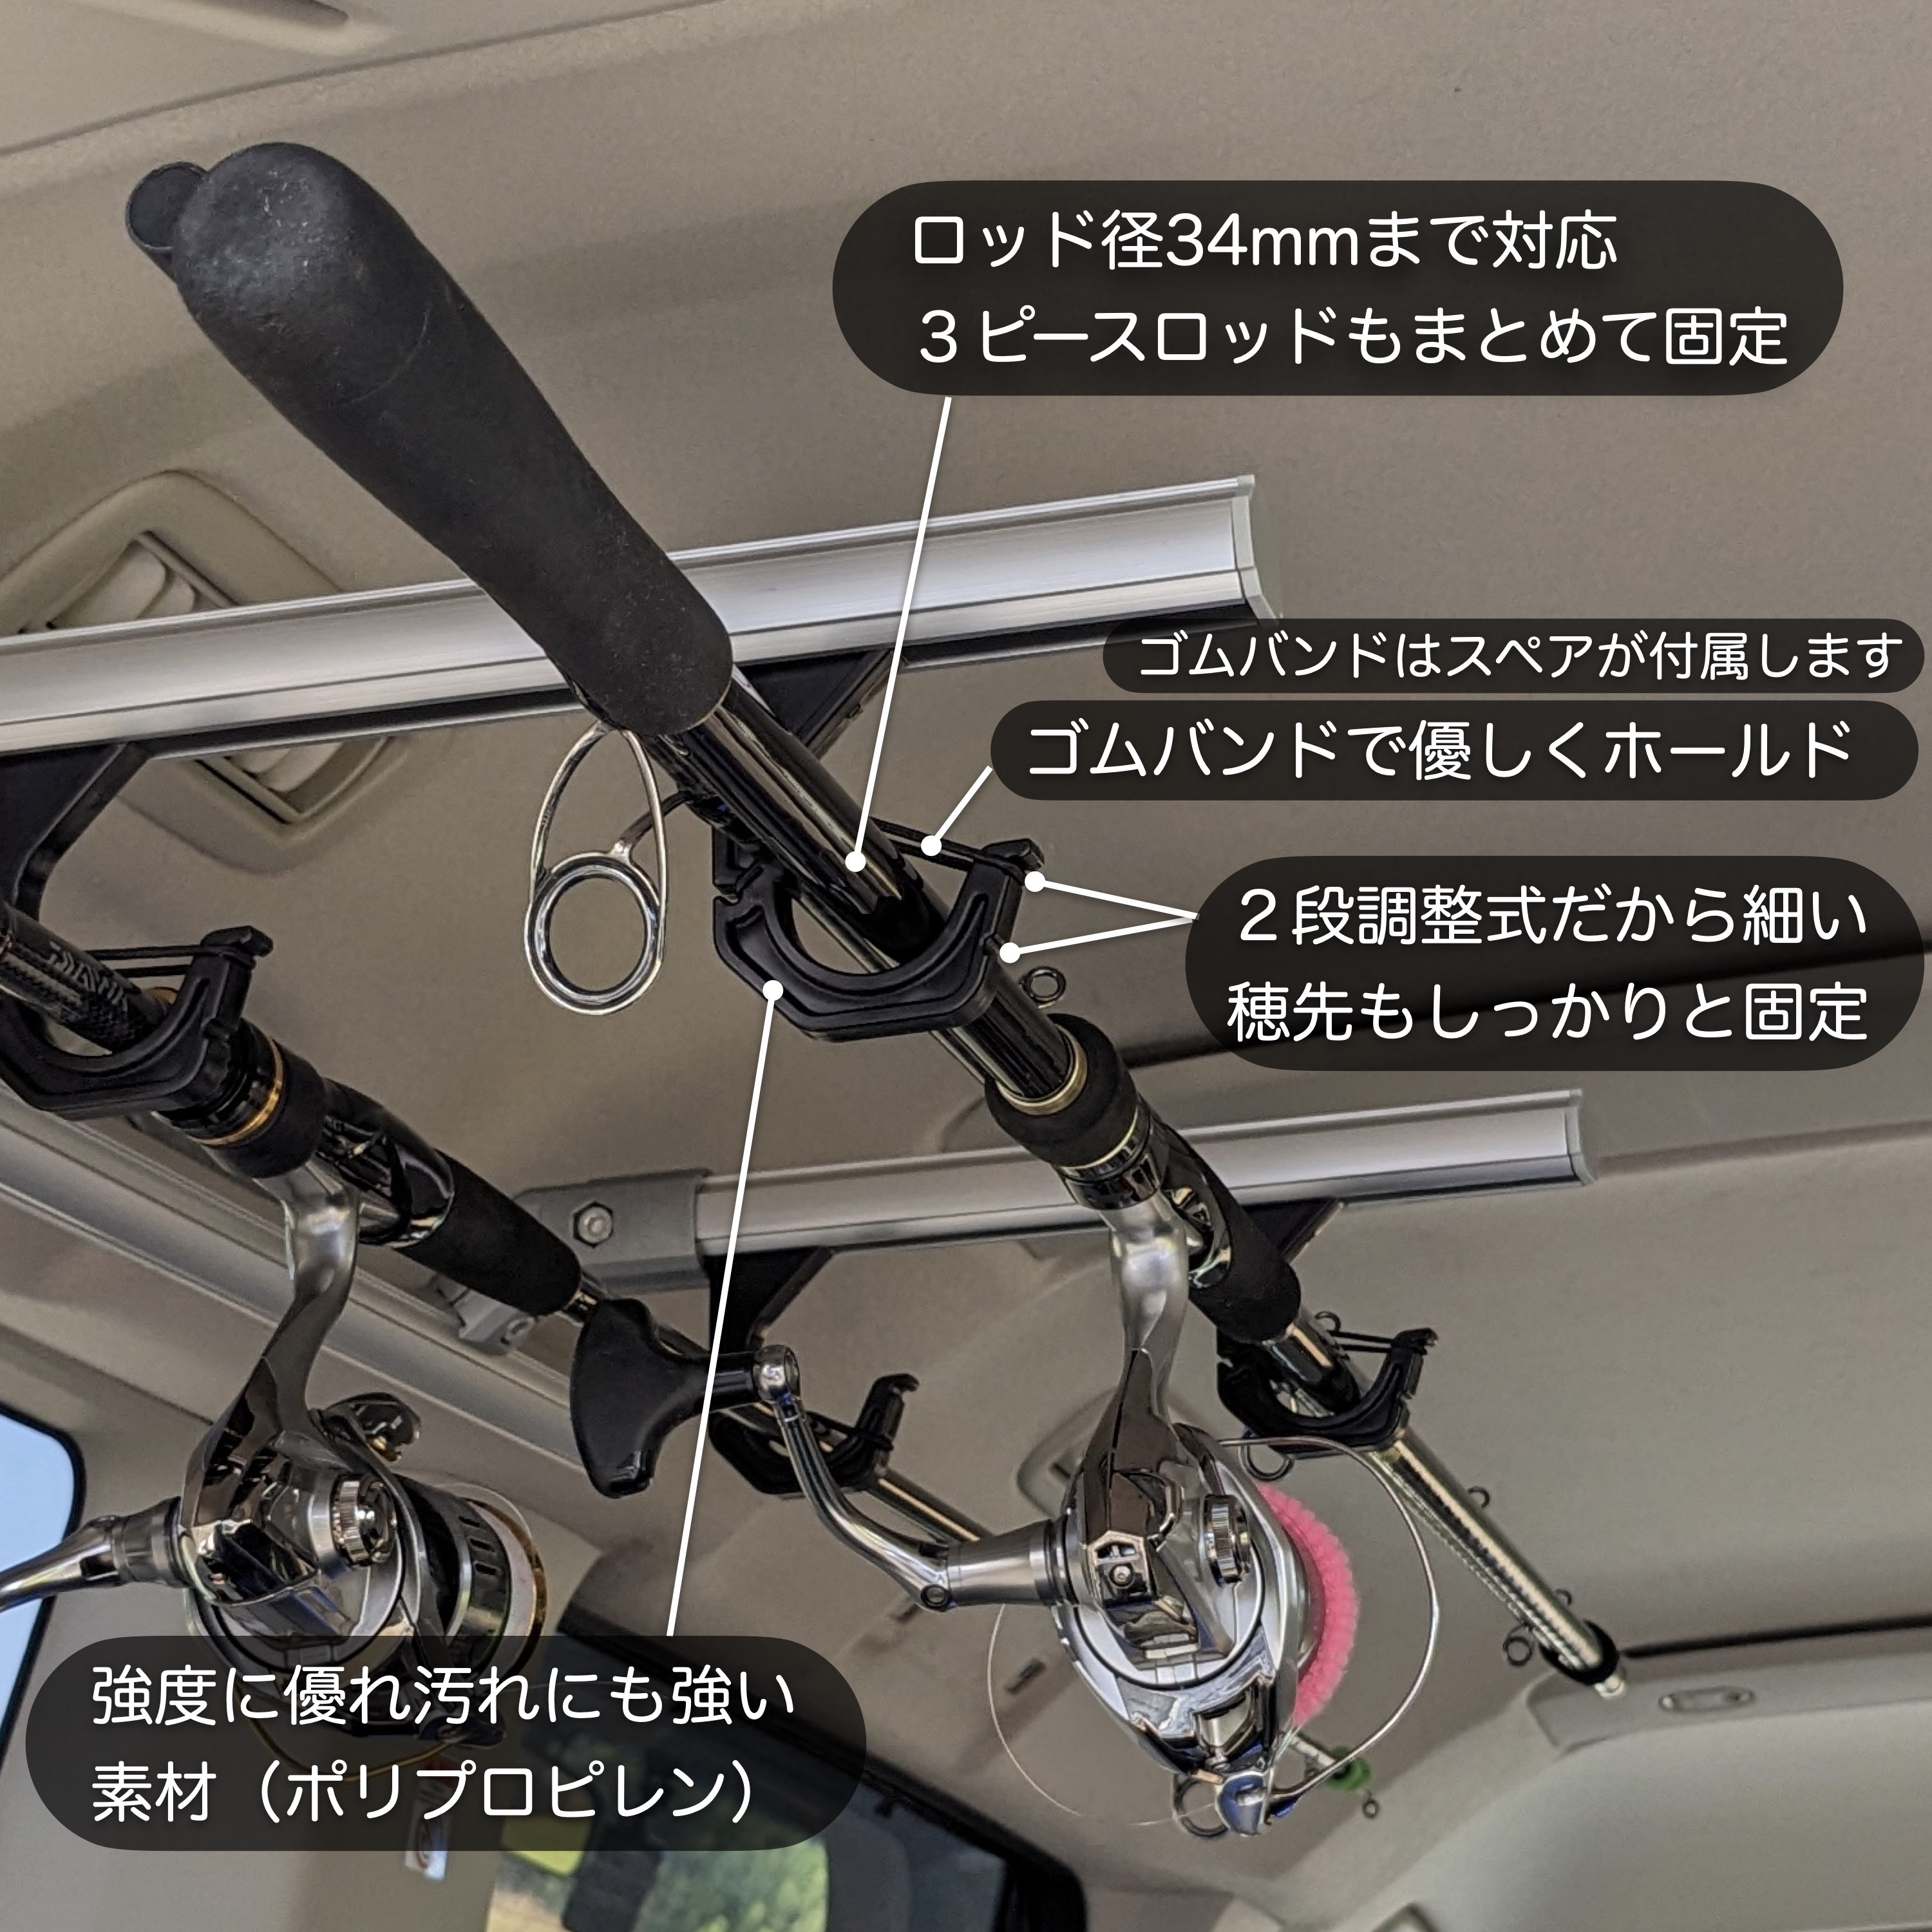  держатель для удочек PRO 4 шт. комплект ( удилище 2 минут ) сделано в Японии ROH-H040 держатель для удочки PRO удилище подставка удочка автомобильный NEWTRAIL новый Trail 